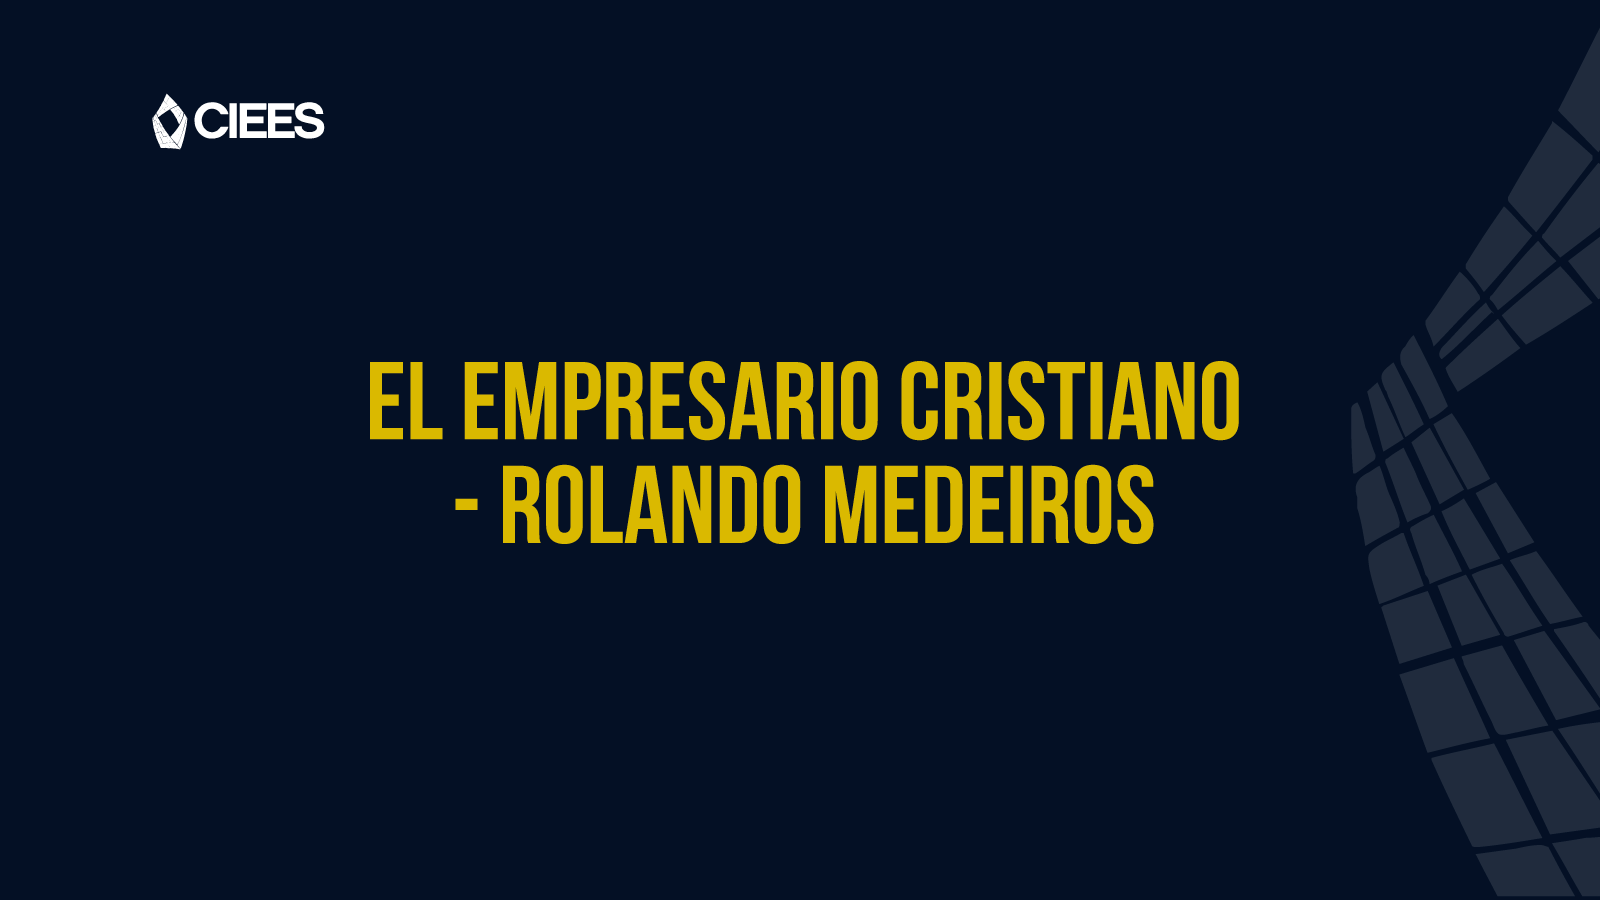 Testimonio Rolando Medeiros como empresario cristiano - CIEES 2017